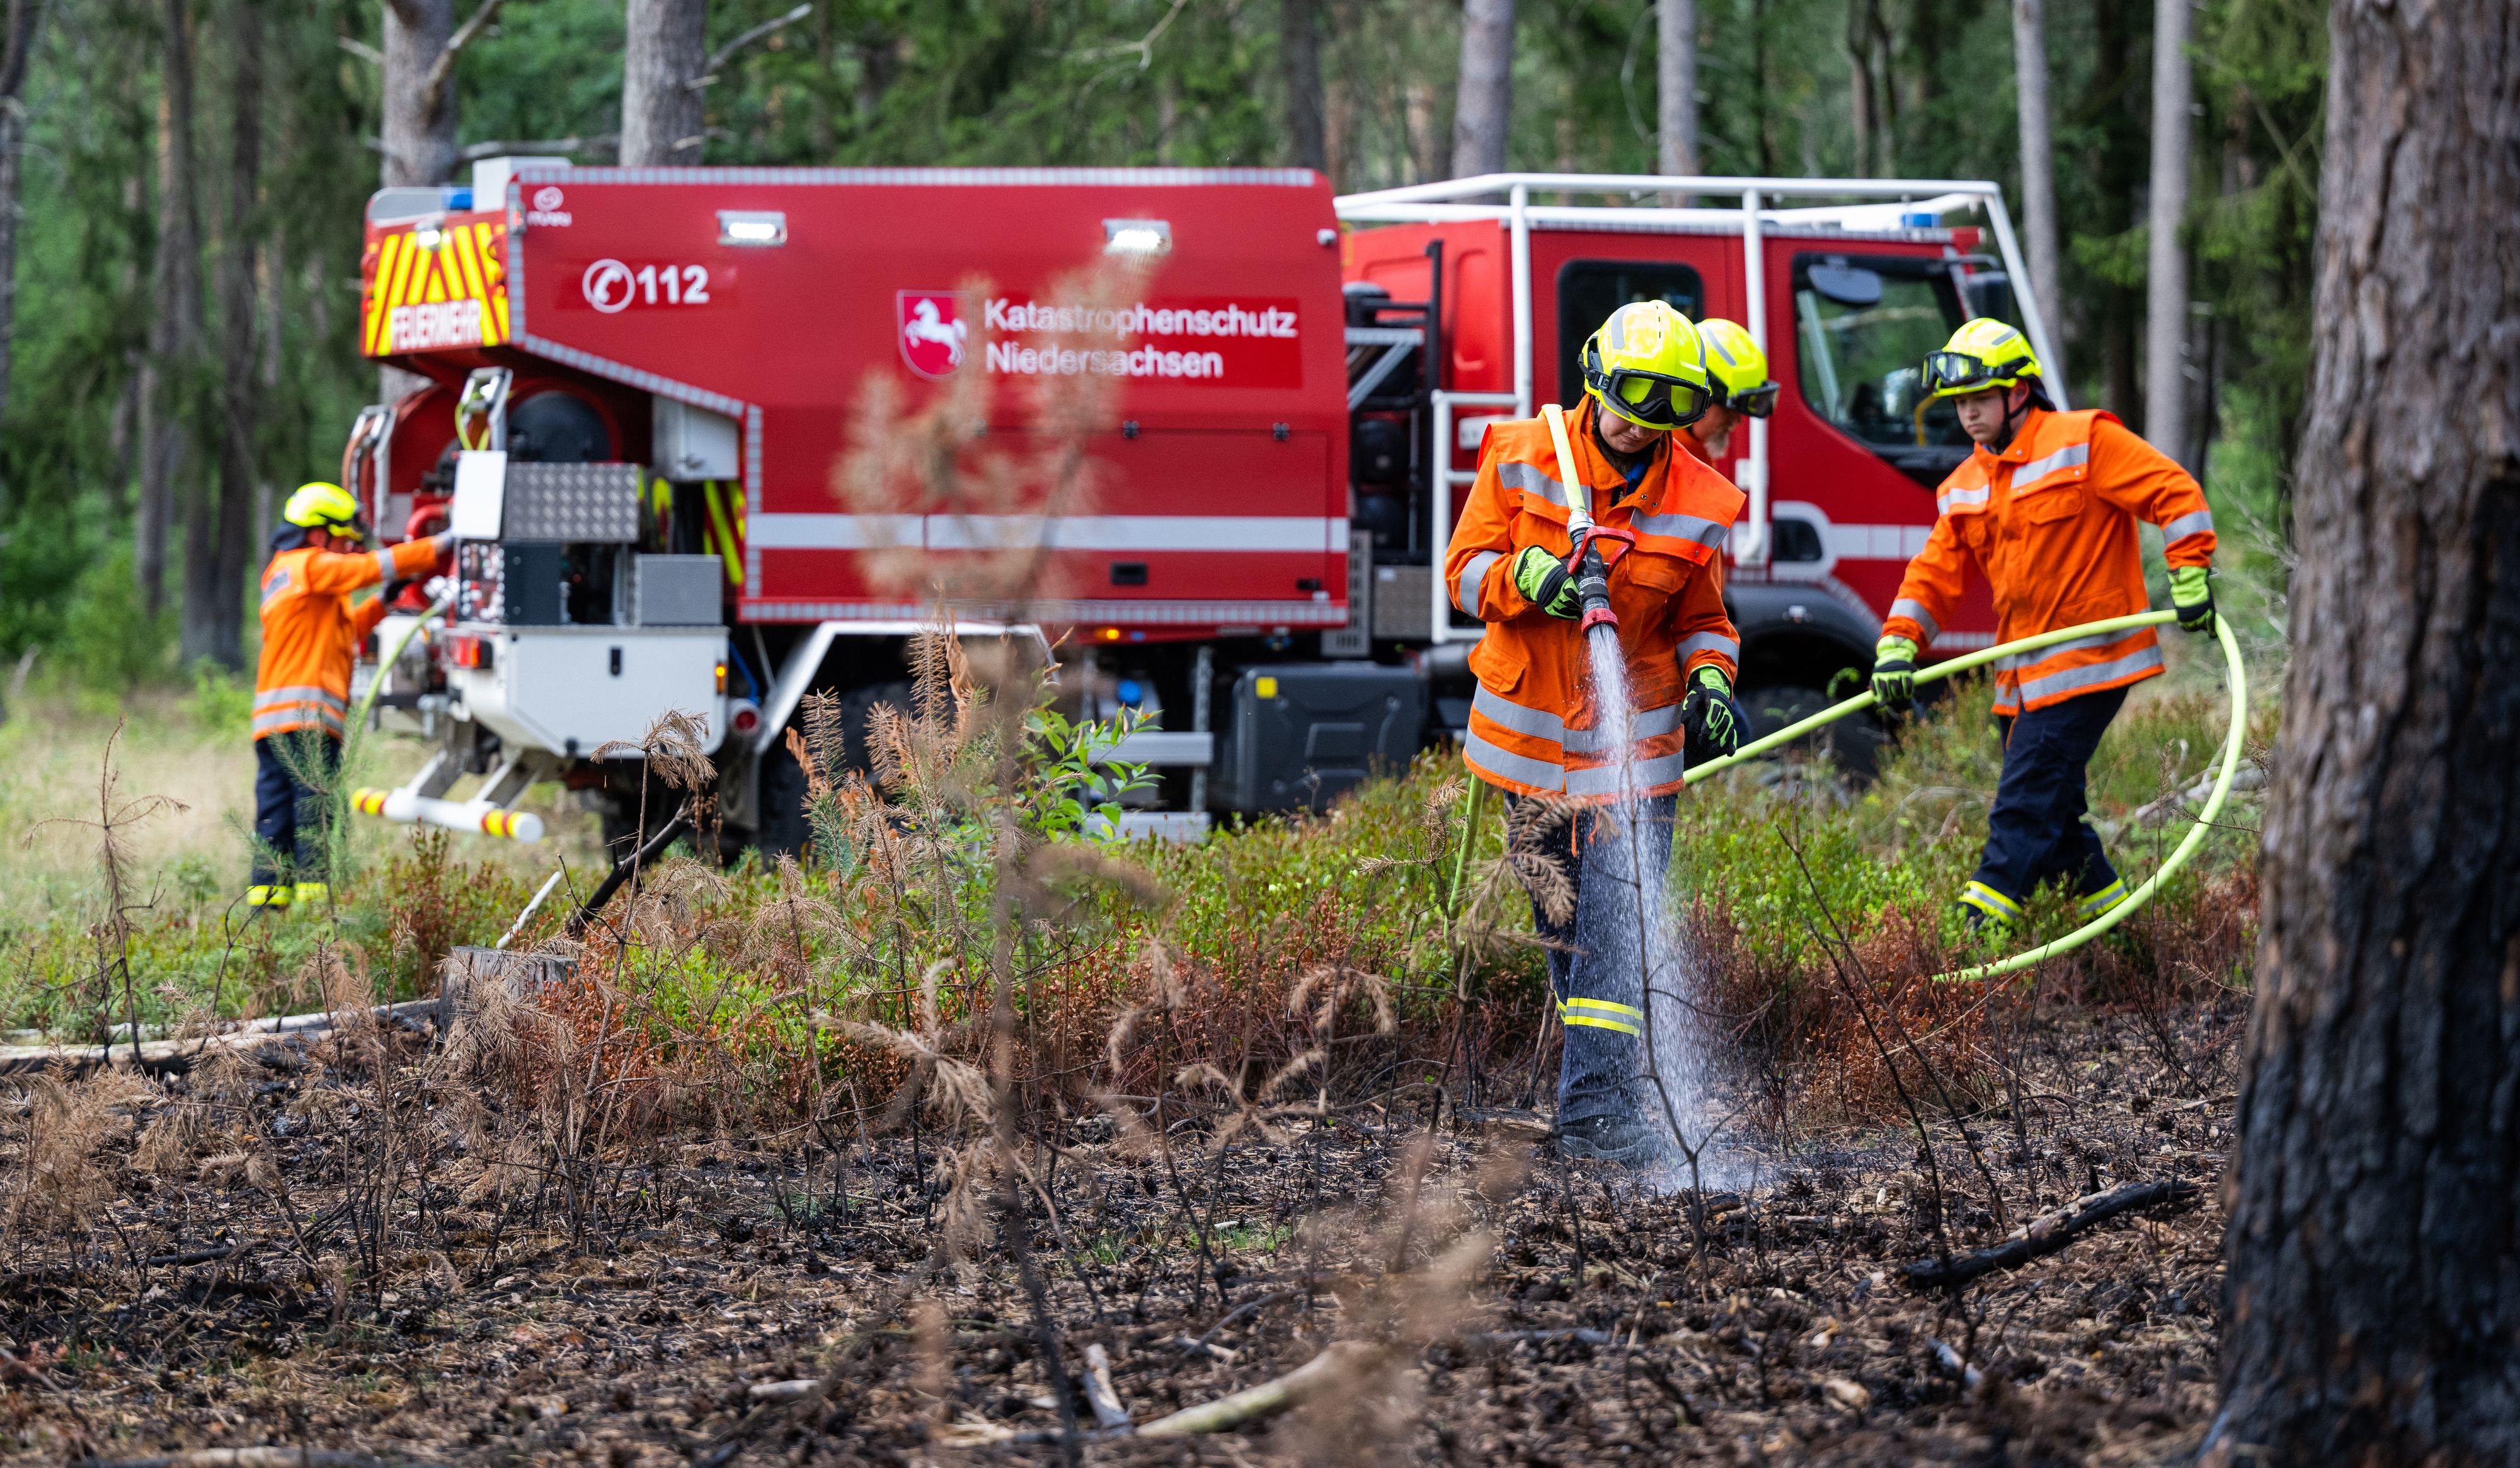 Ehrenamtliche Feuerwehrkräfte üben den Einsatz vom Waldbrandtanklöschfahrzeug "CCFM 3000". Archivfoto: dpa